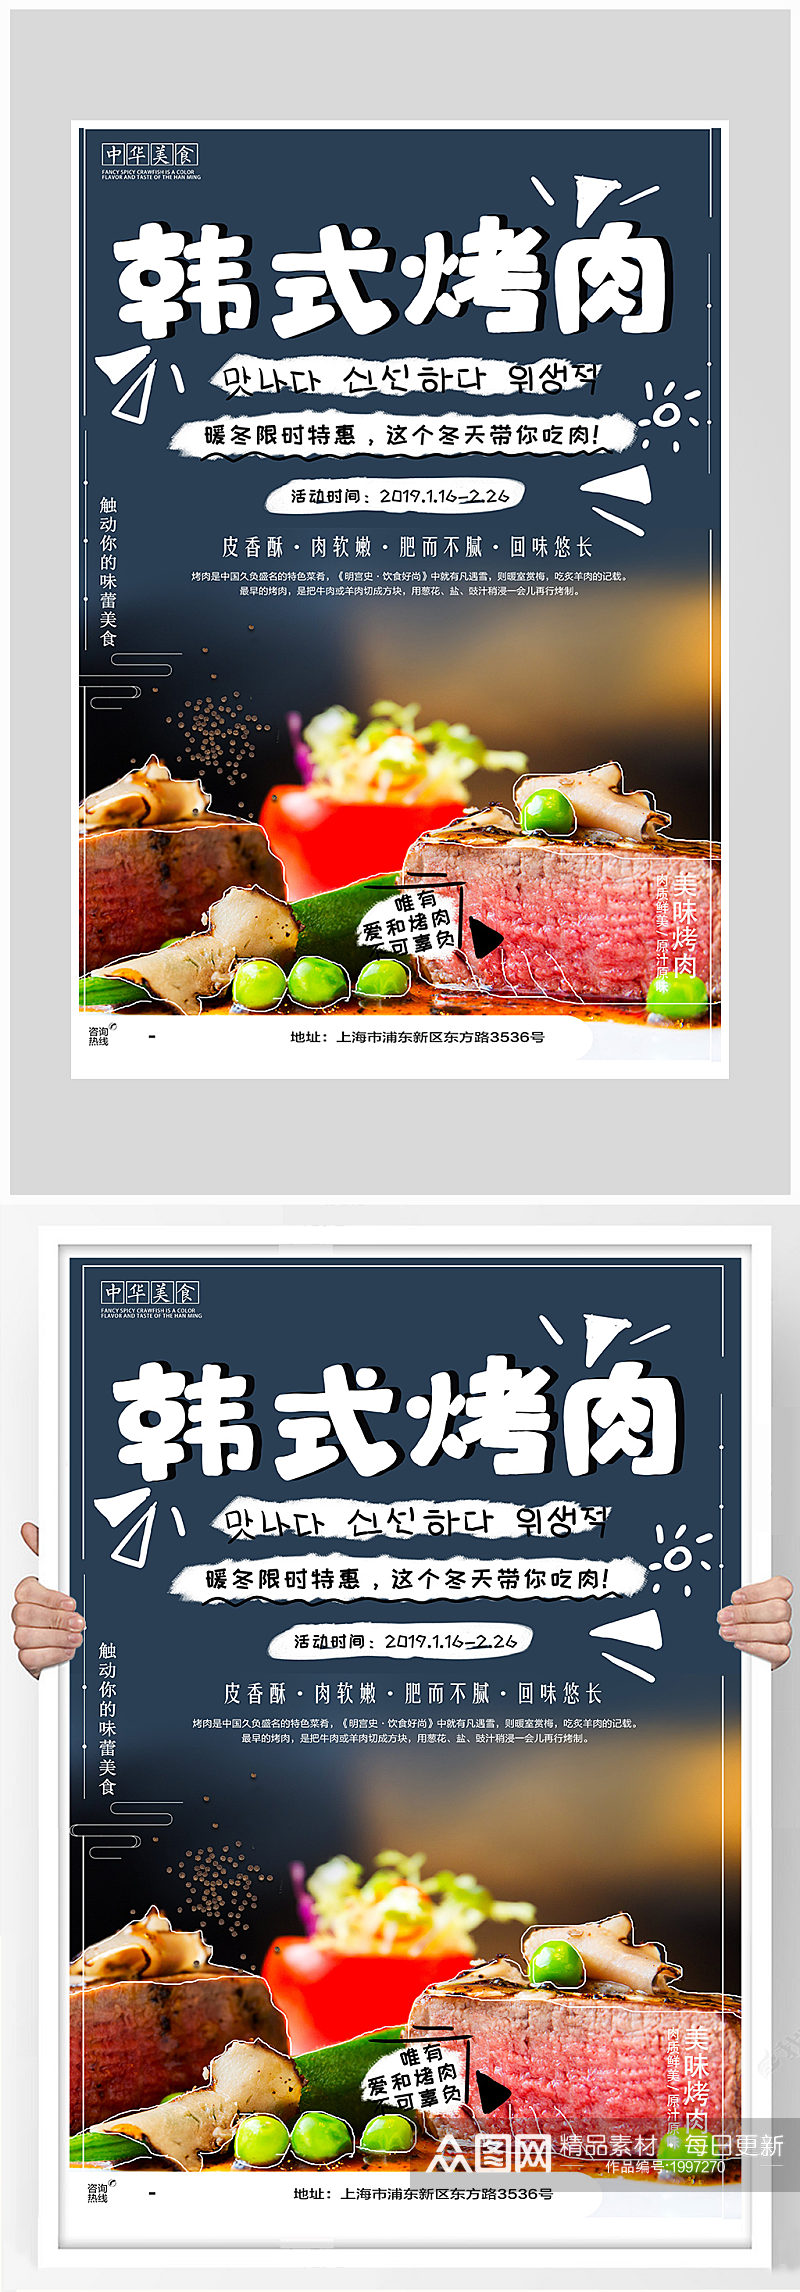 创意质感韩式烤肉烧烤海报设计素材